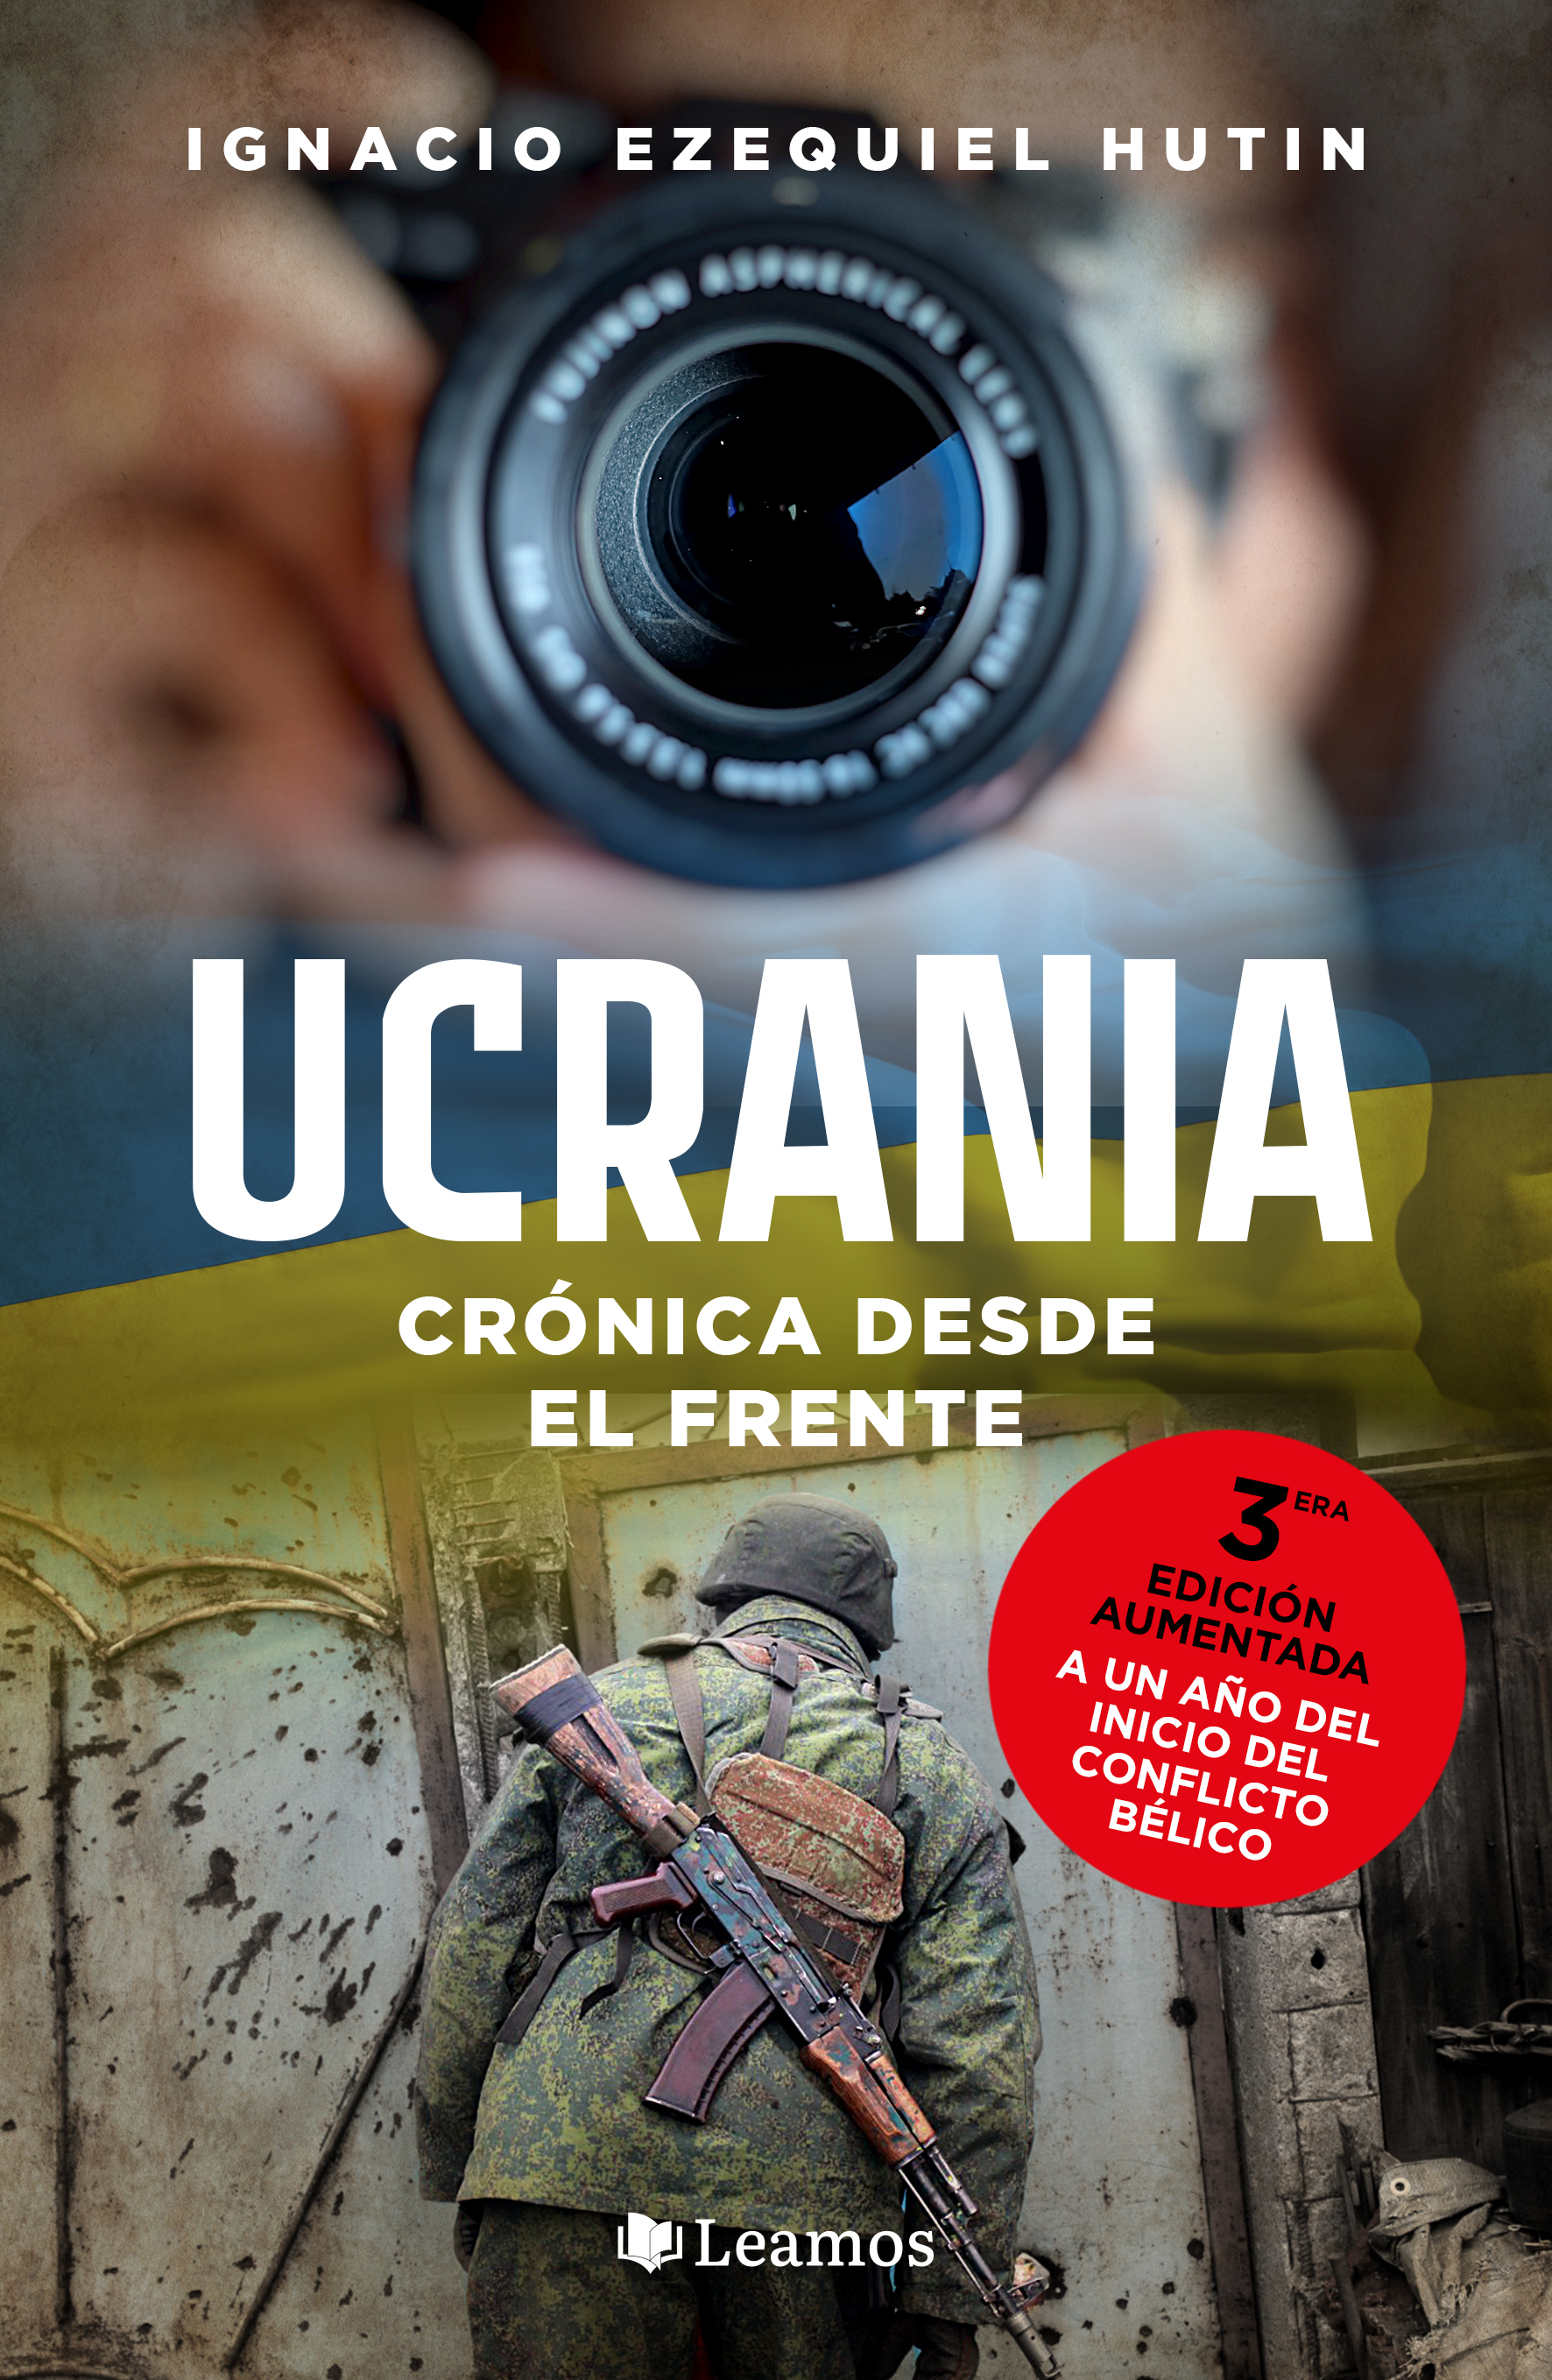 Tercera edición de "Ucrania, crónica desde el frente".